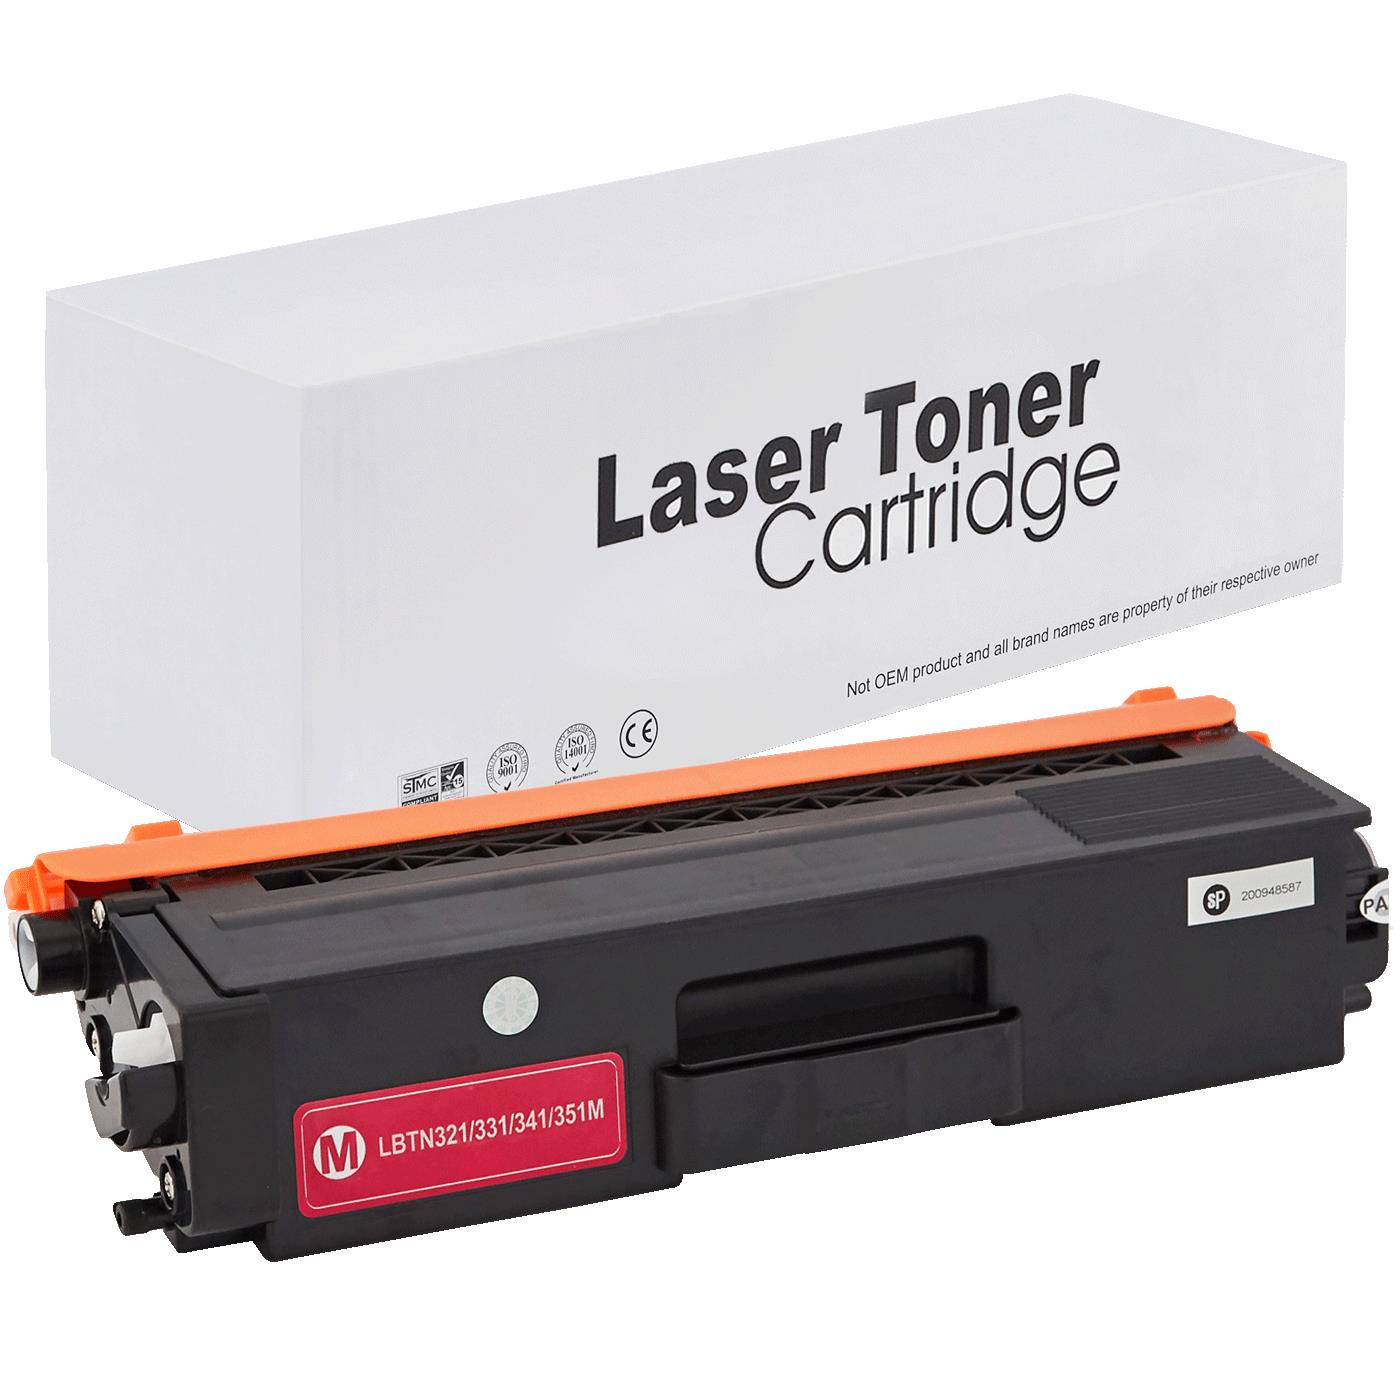 съвместима тонер касета за принтери и печатащи устройства на Brother DCP-L 8400 CDN Toner BR-321M | TN321M. Ниски цени, прецизно изпълнение, високо качество.